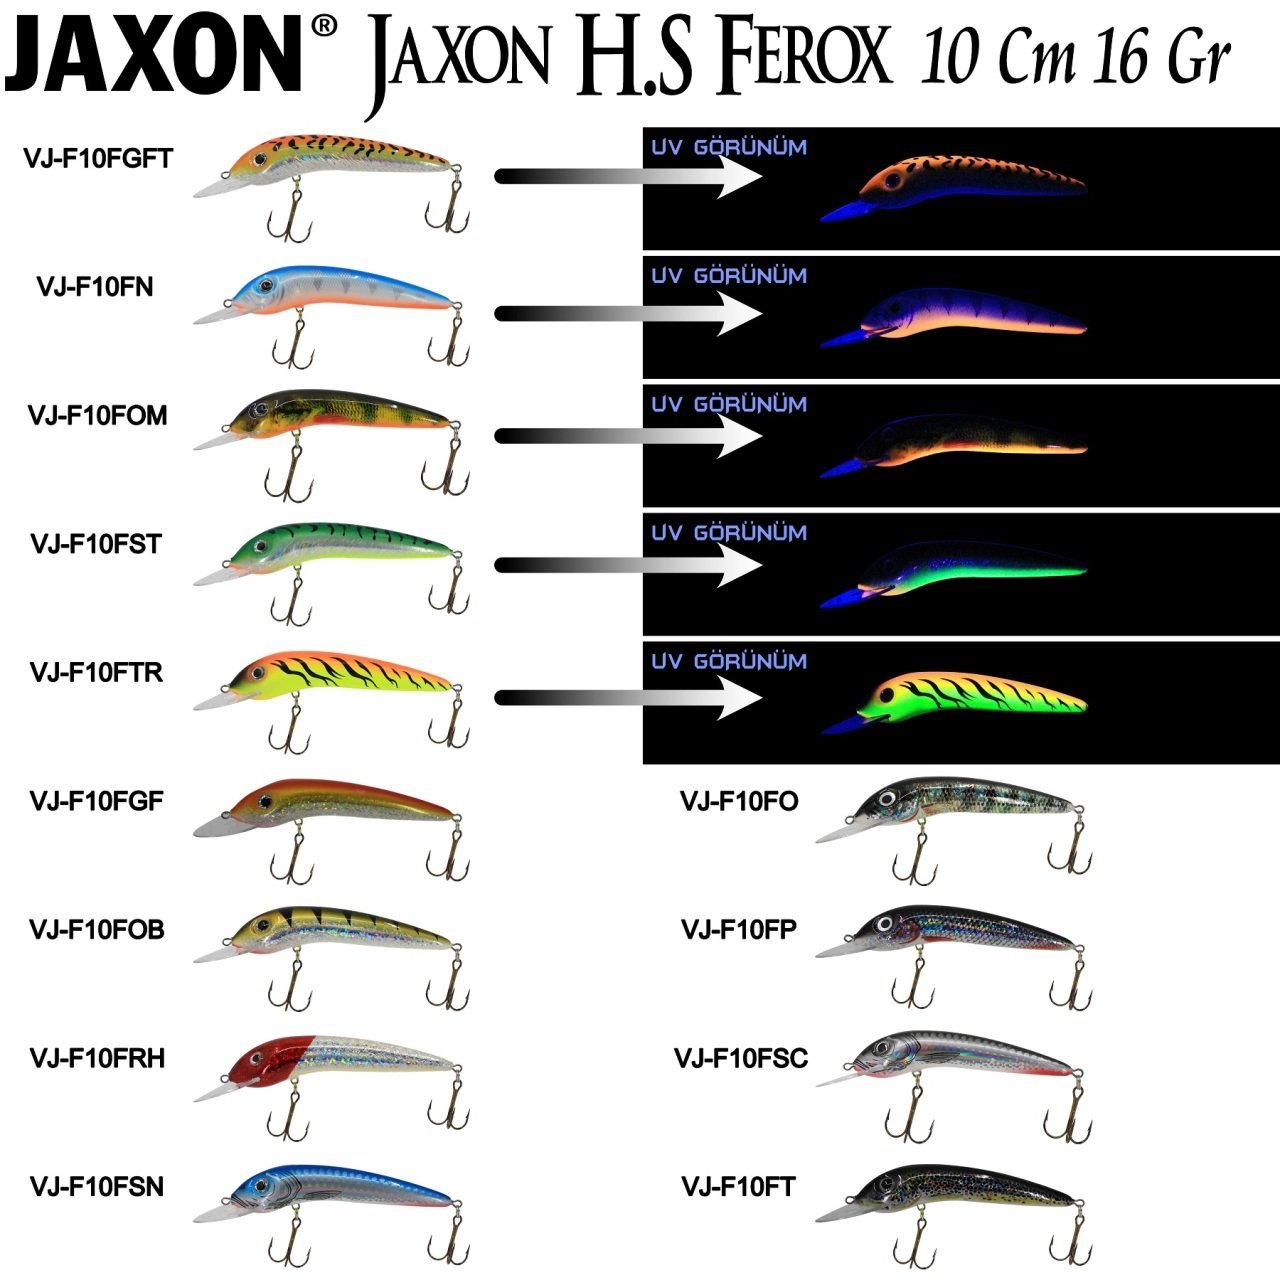 Jaxon H.S Ferox 10 Cm